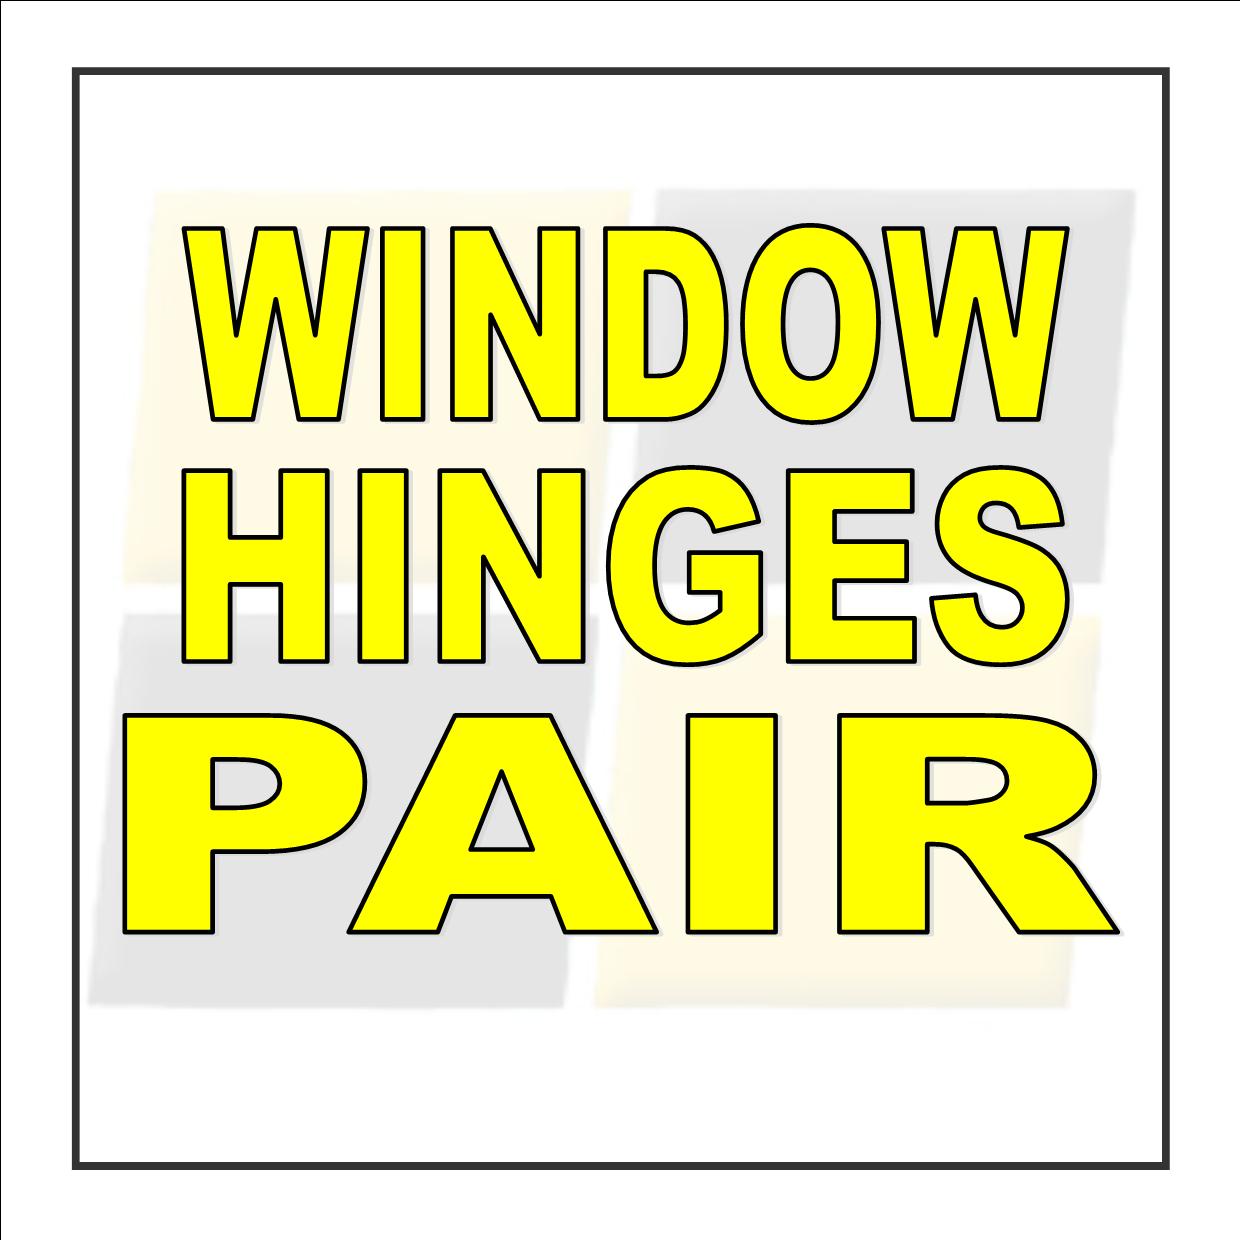 Window Hinges - Pair